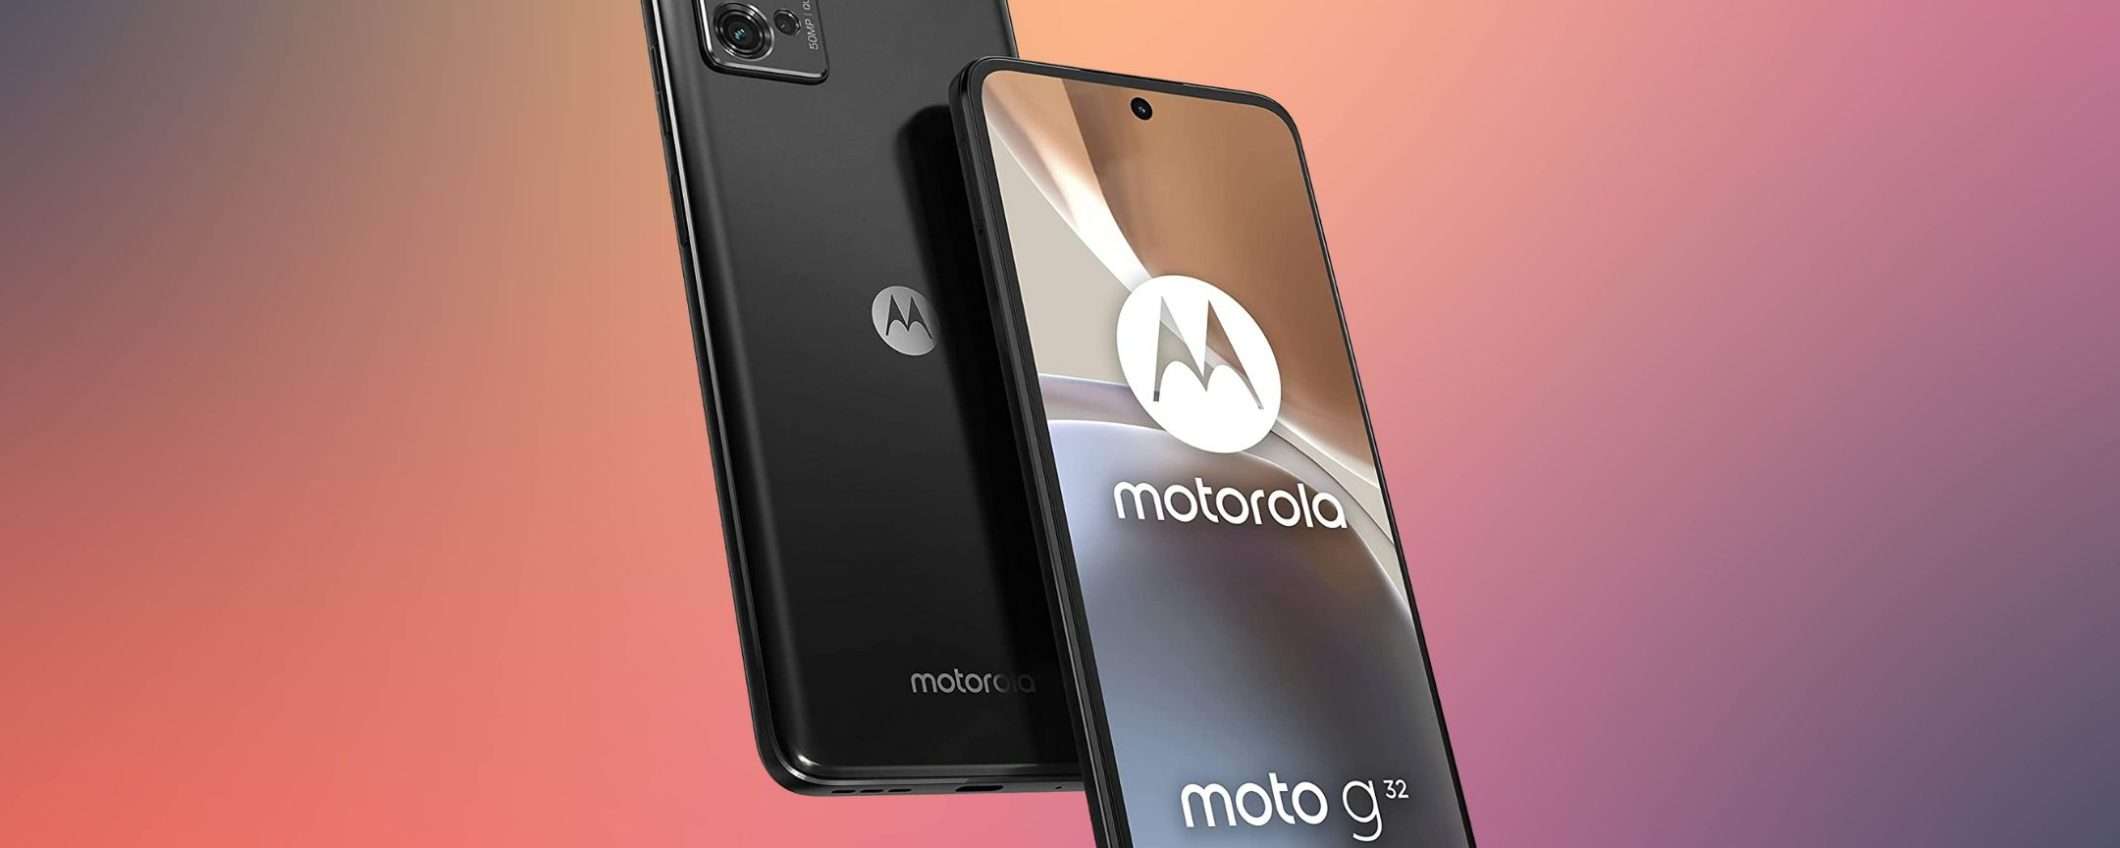 Smartphone Motorola a 119,90 euro: una bomba ad un super prezzo